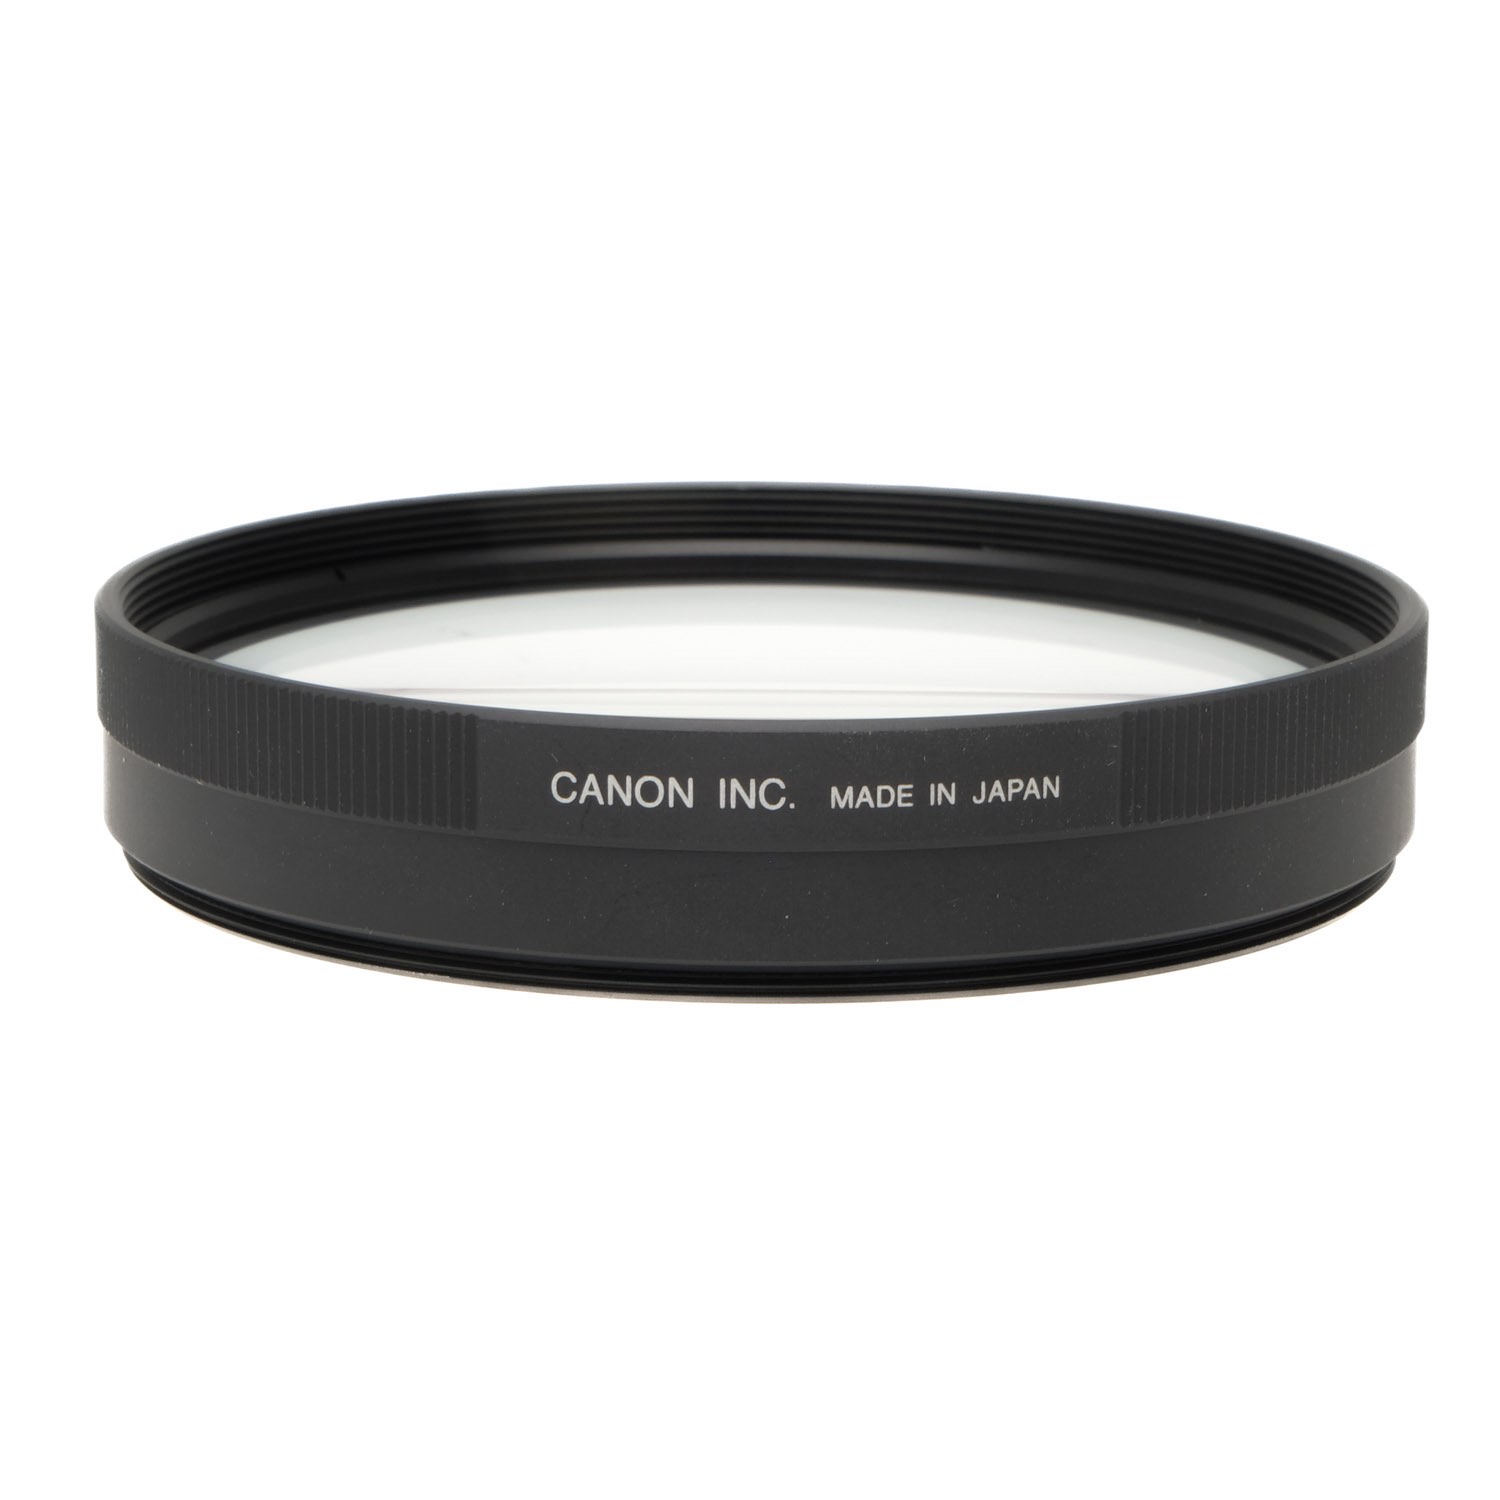 Canon 77mm Close up Lens 500D, Boxed cz6-5298